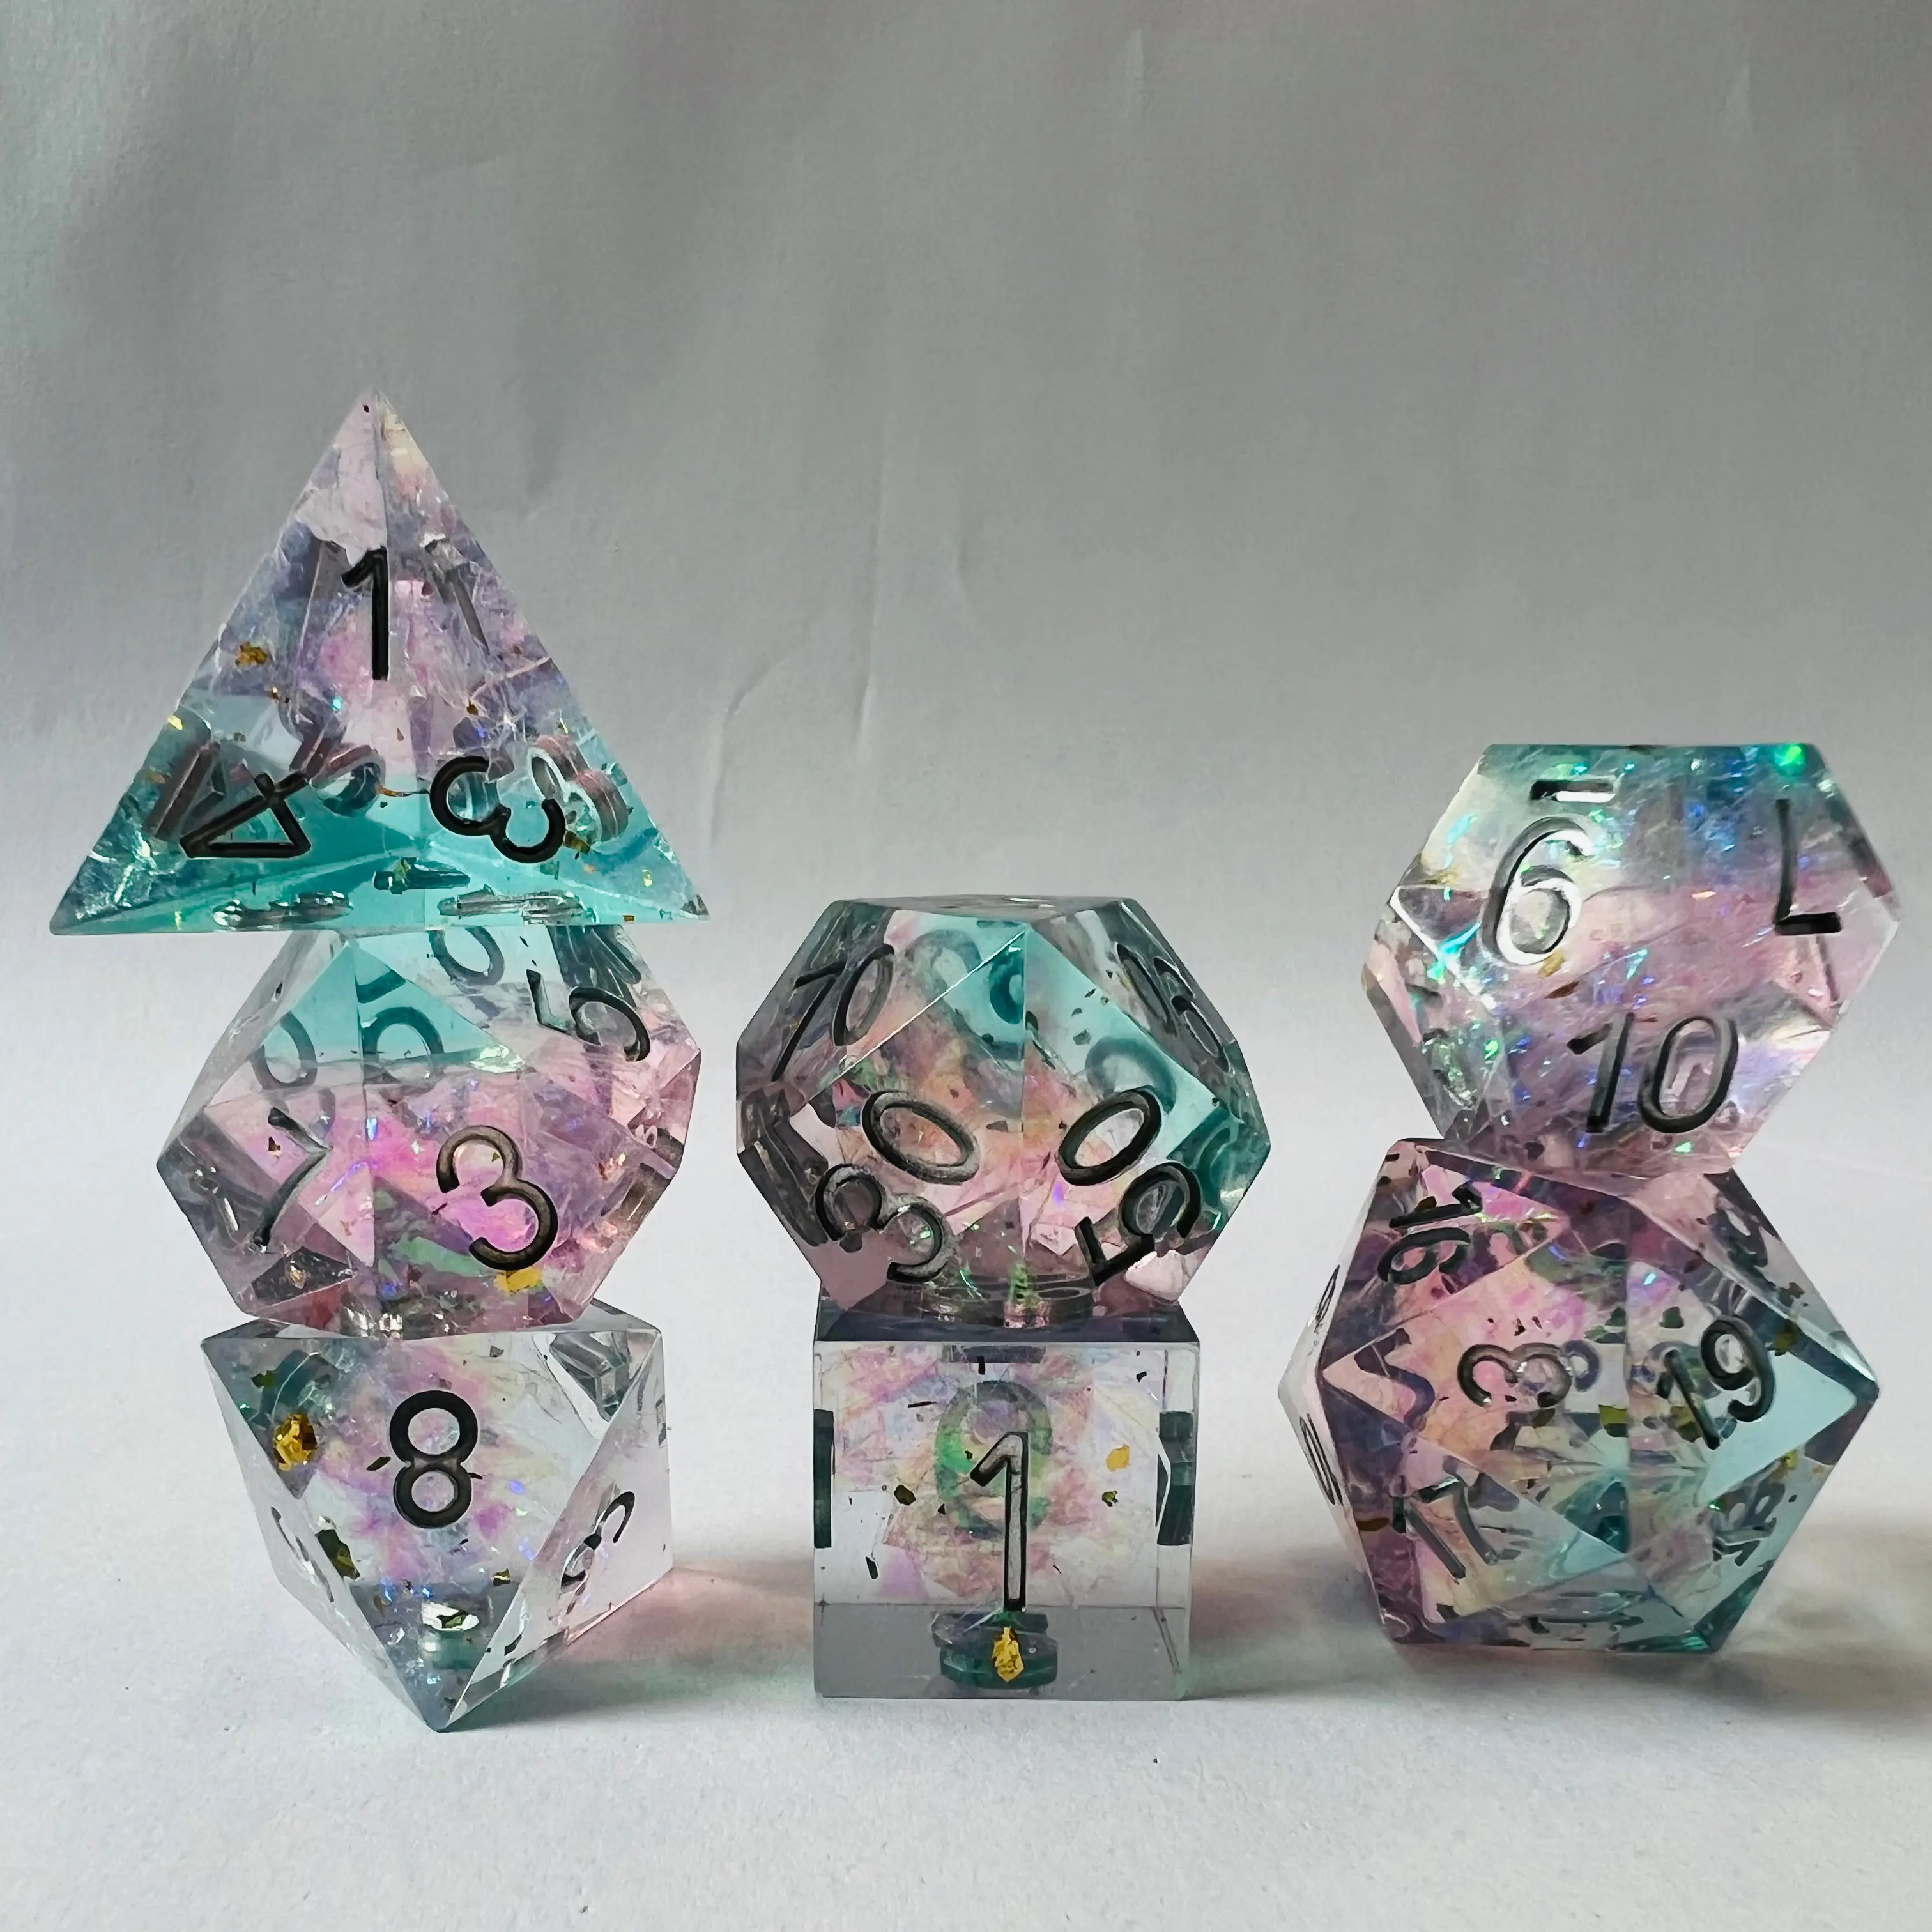 Tablero de poliedro poliédrico o juegos de cartas Juego de rol Mazmorras y dragones Trpg Dnd Juego de dados de cubo de resina